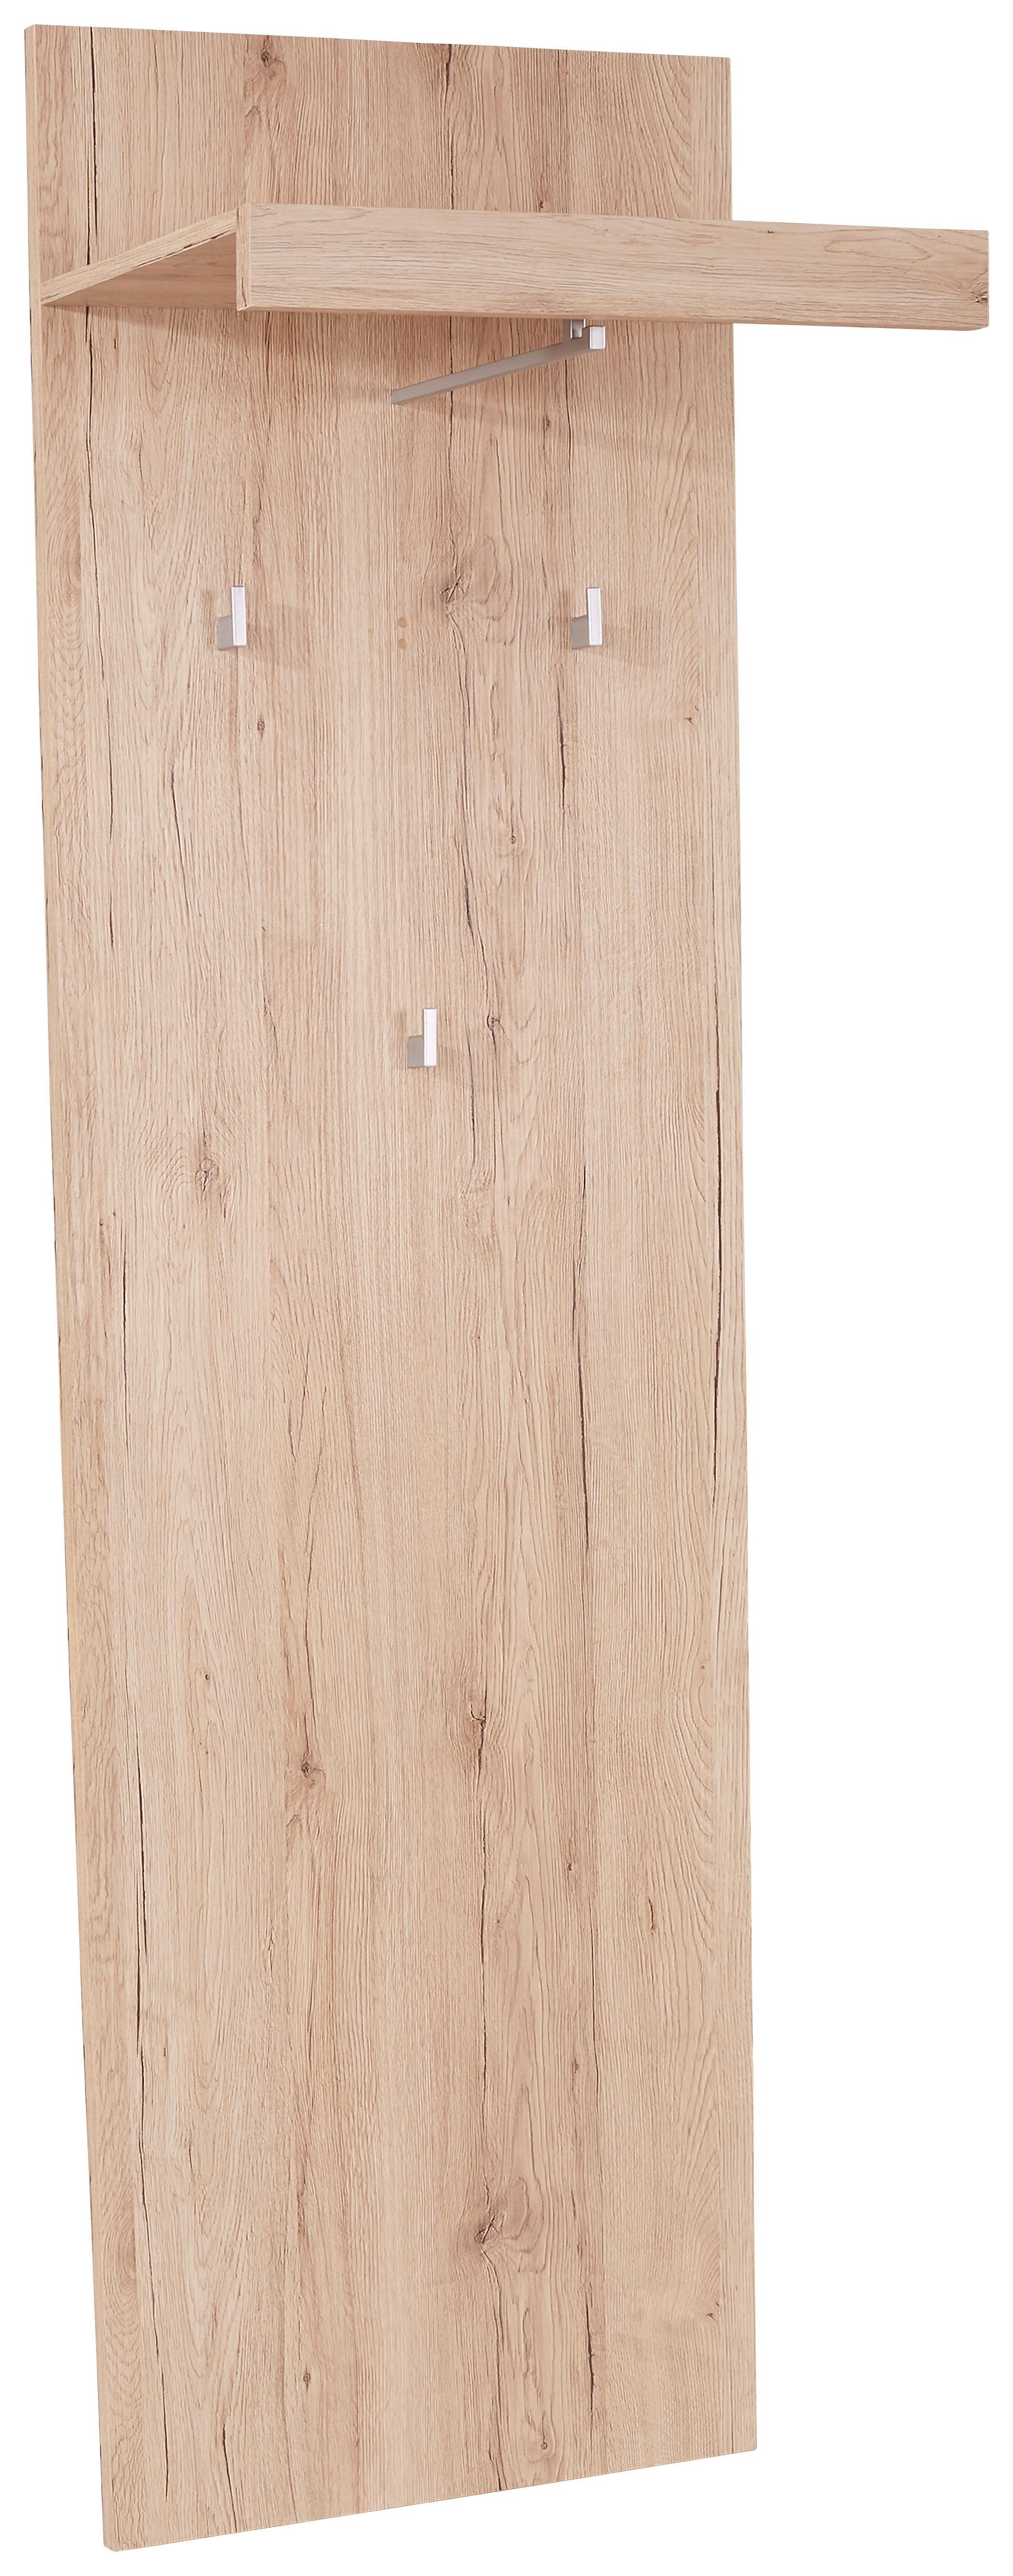 Šatní Panel Malta - barvy dubu, Moderní, kompozitní dřevo (50/195,4/28,2cm)